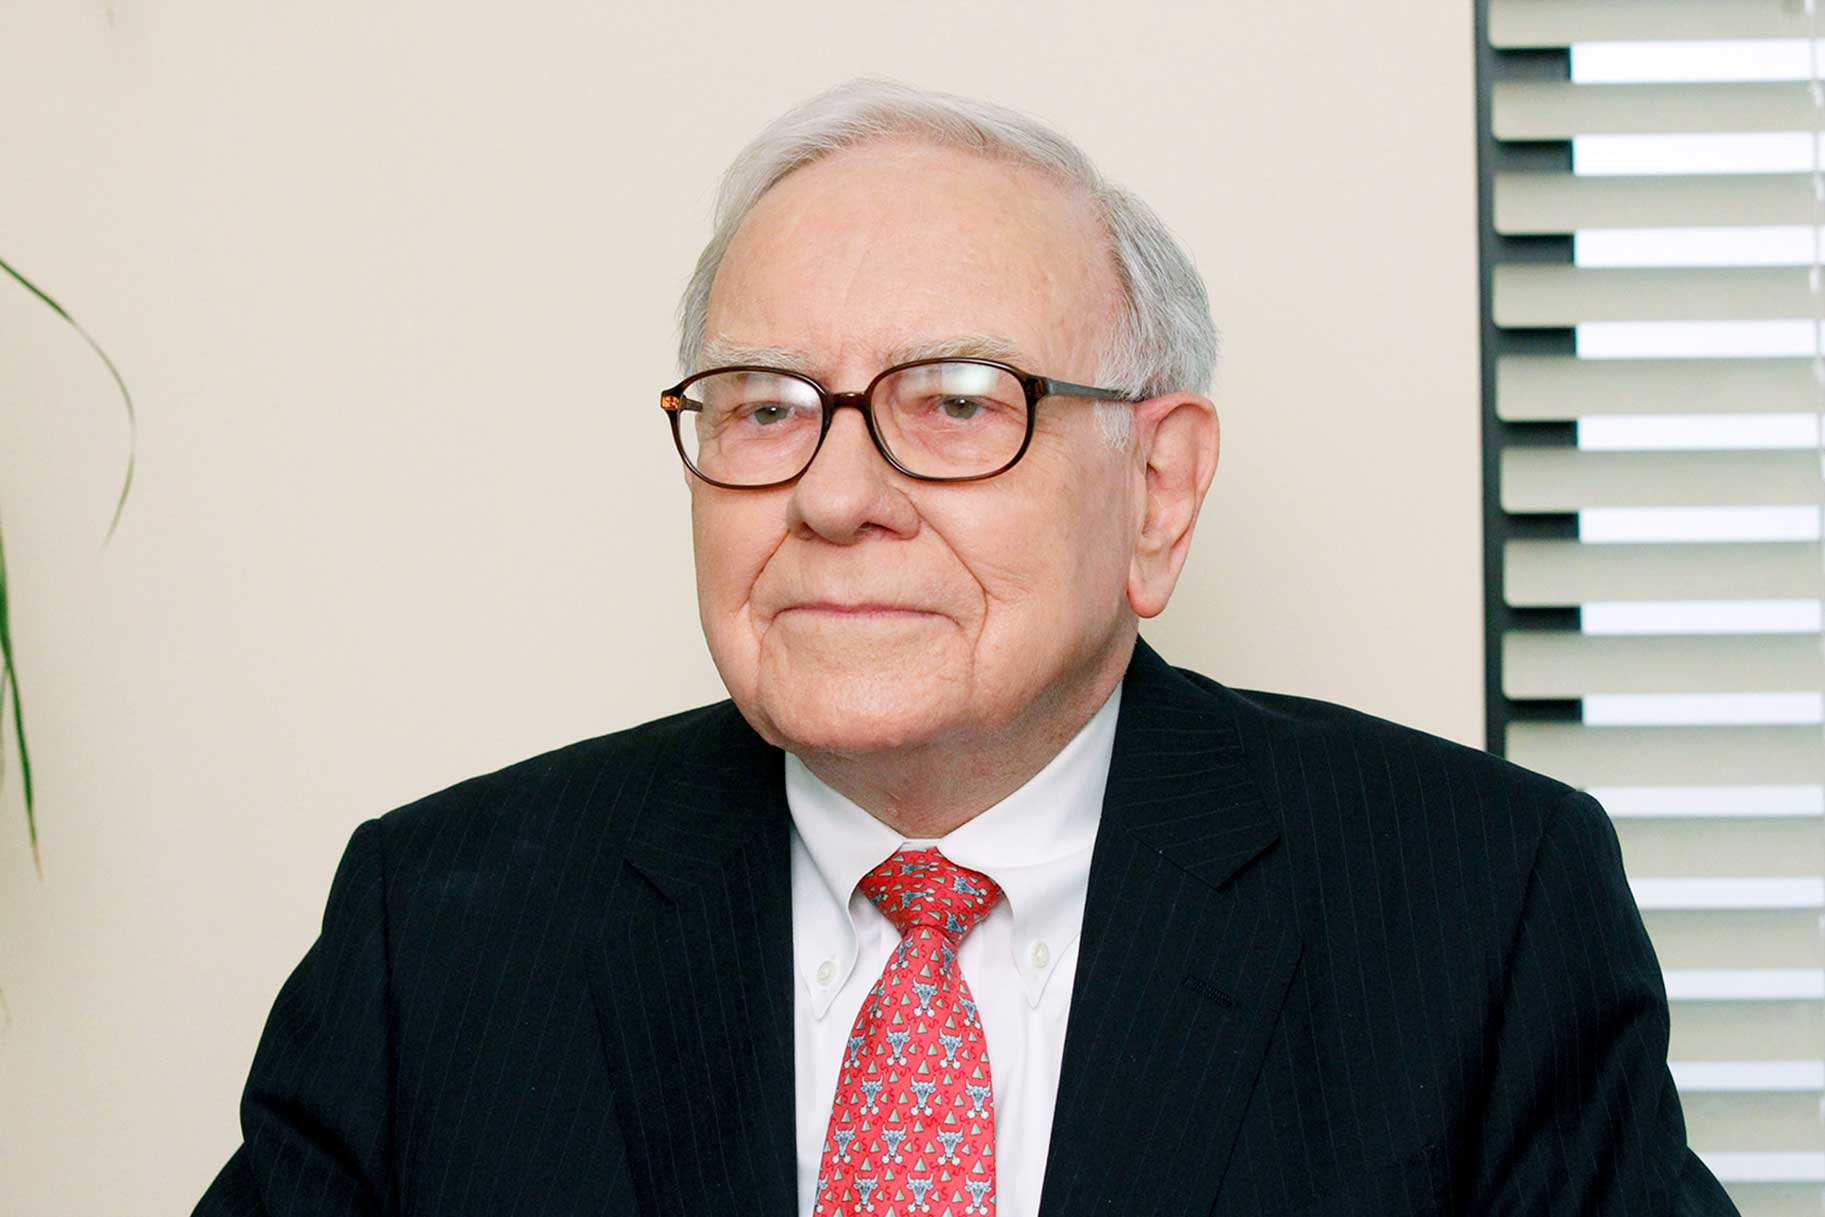 Warren Buffett appears on The Office.